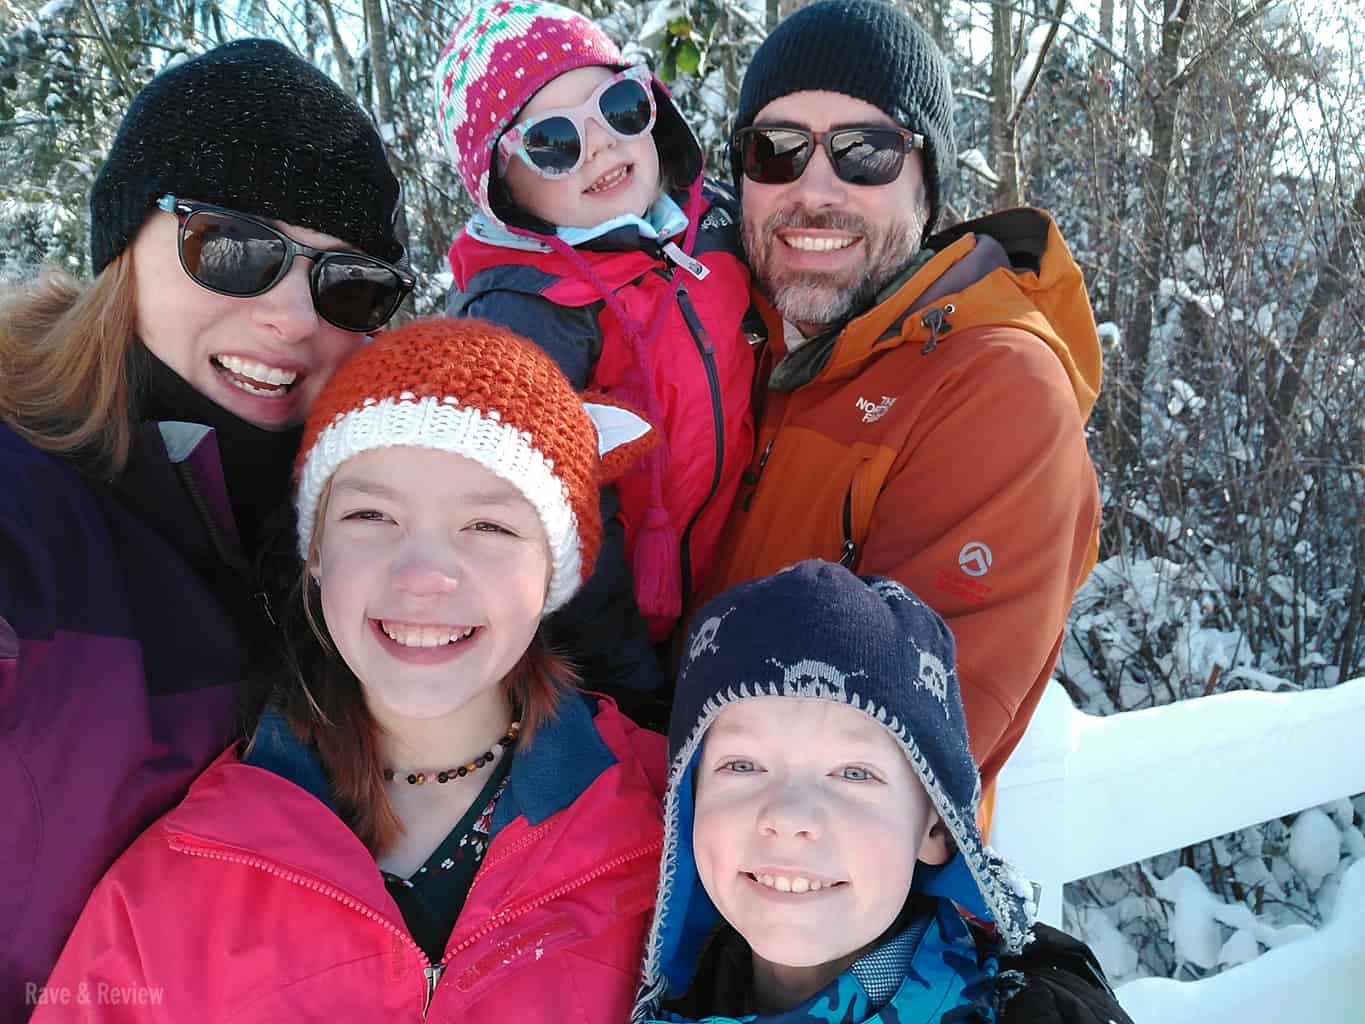 Family in snow